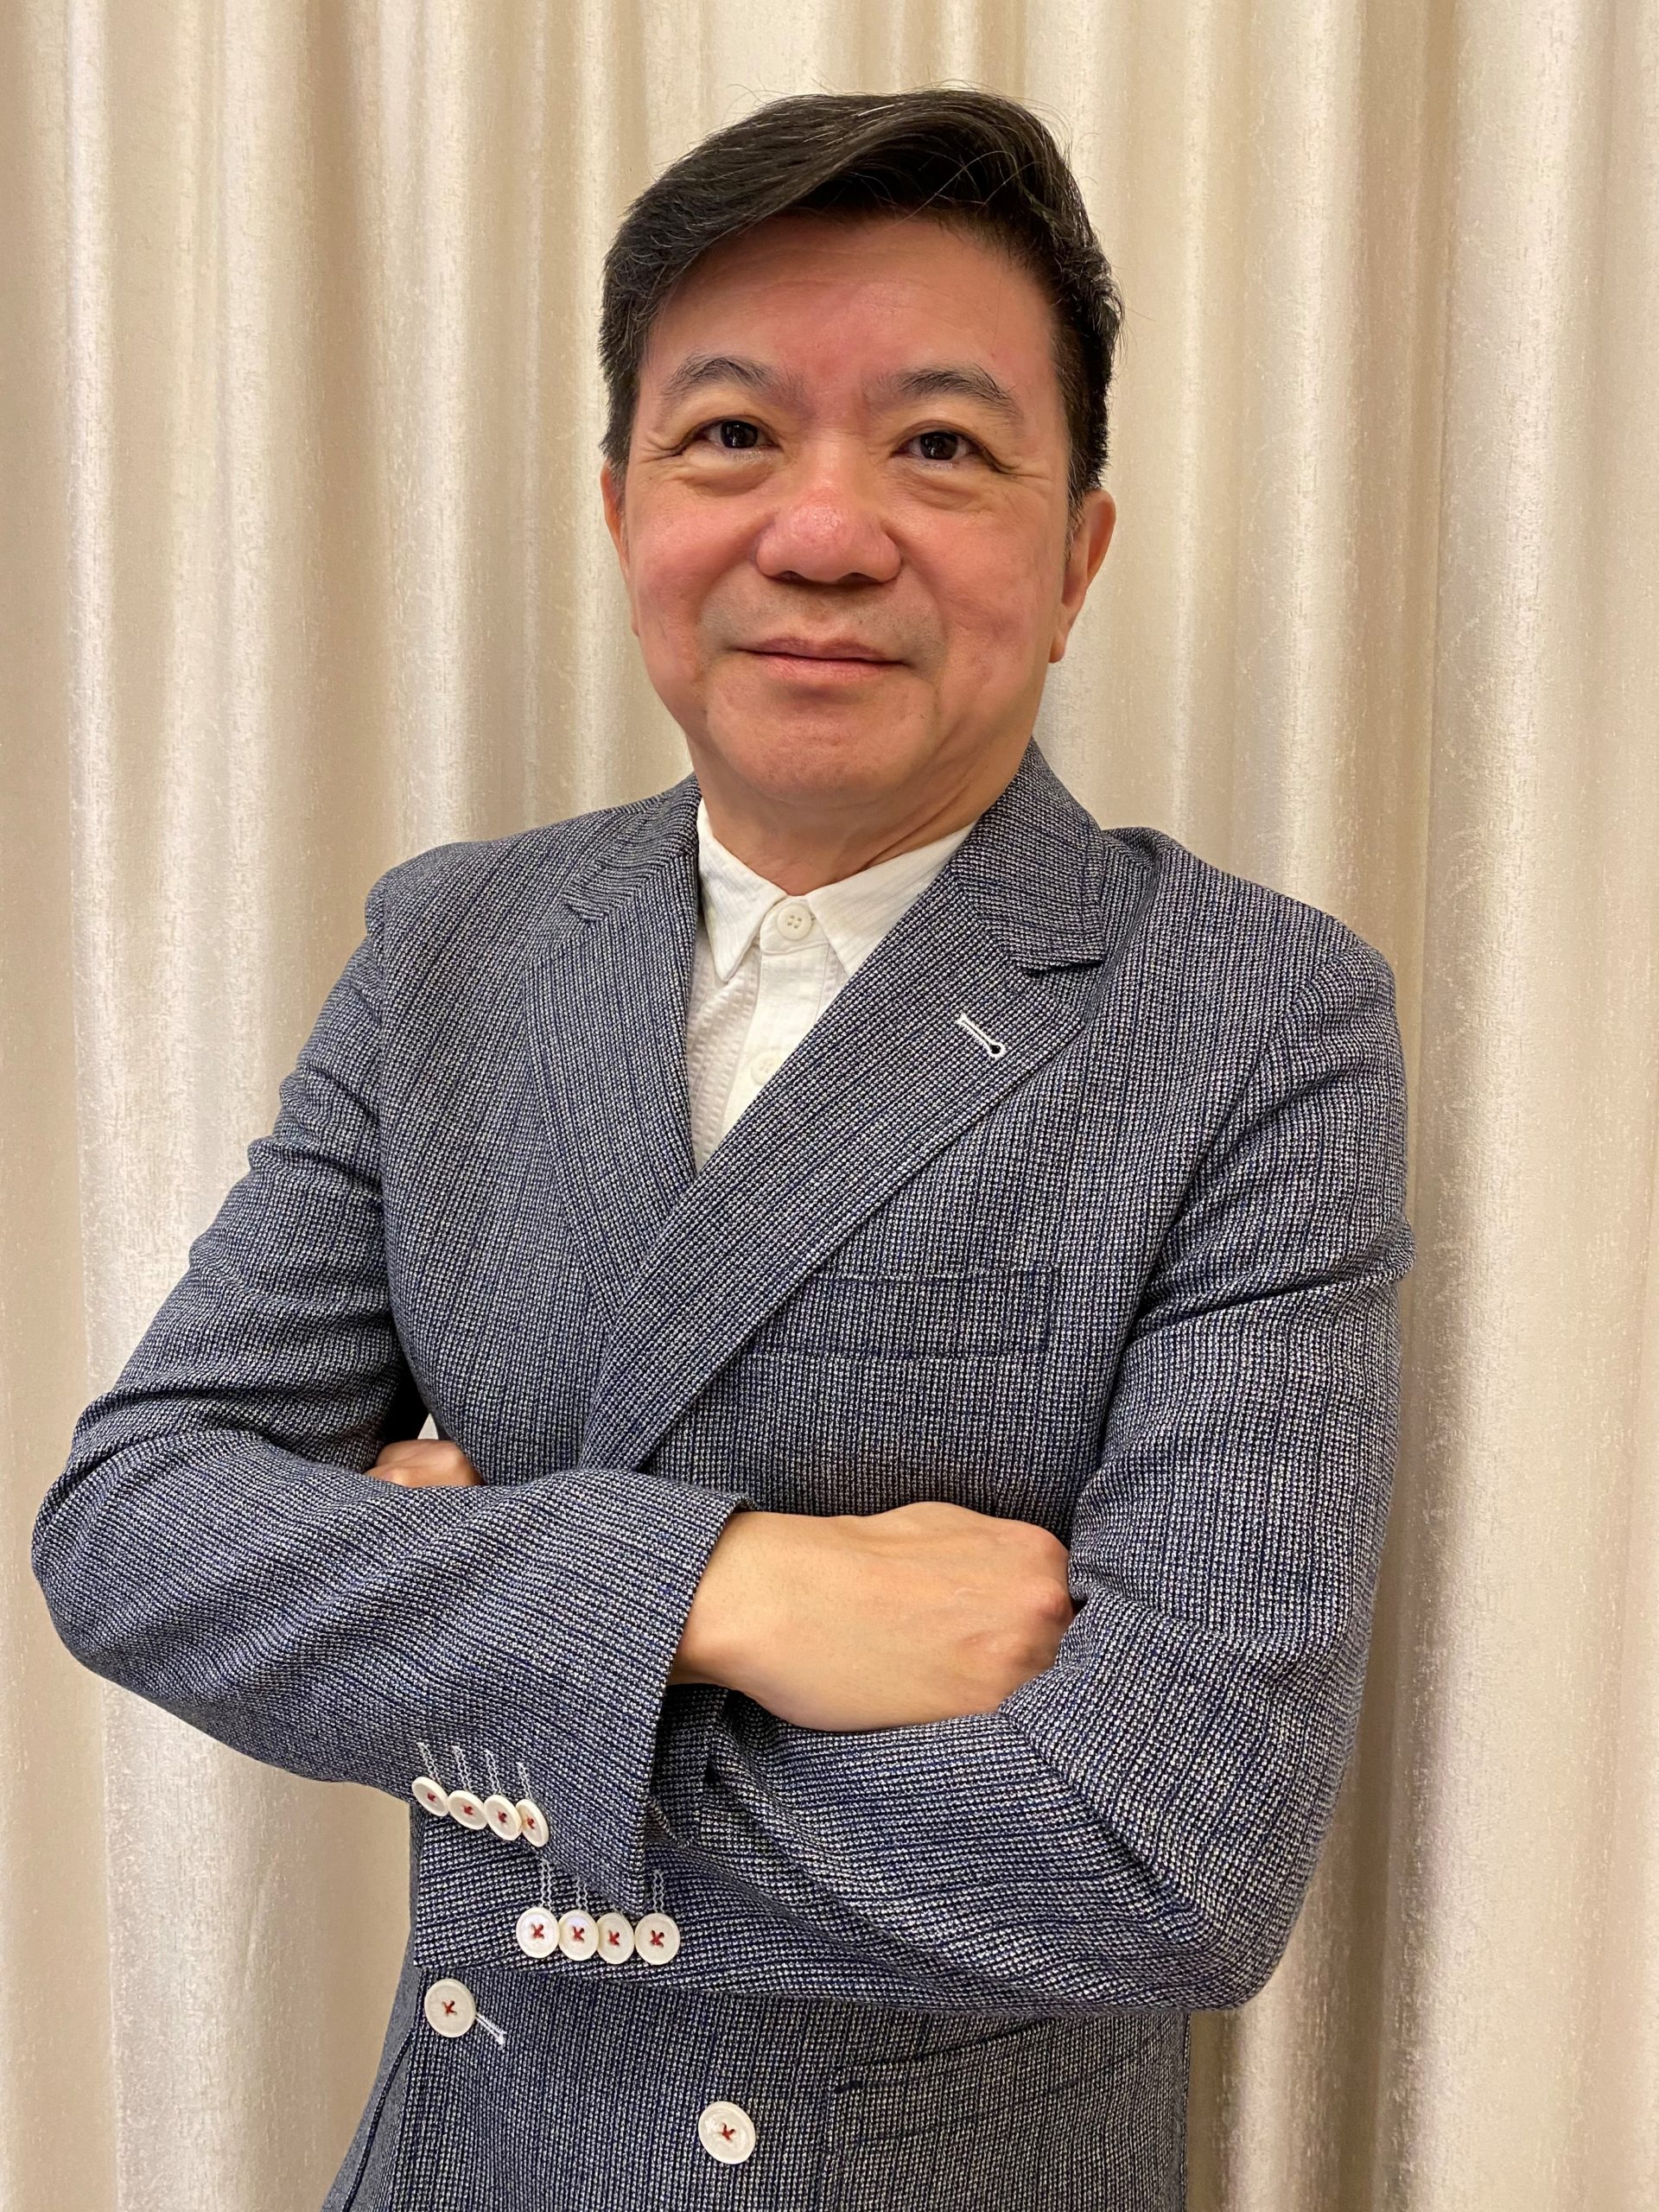 Dr. Raymond Liang